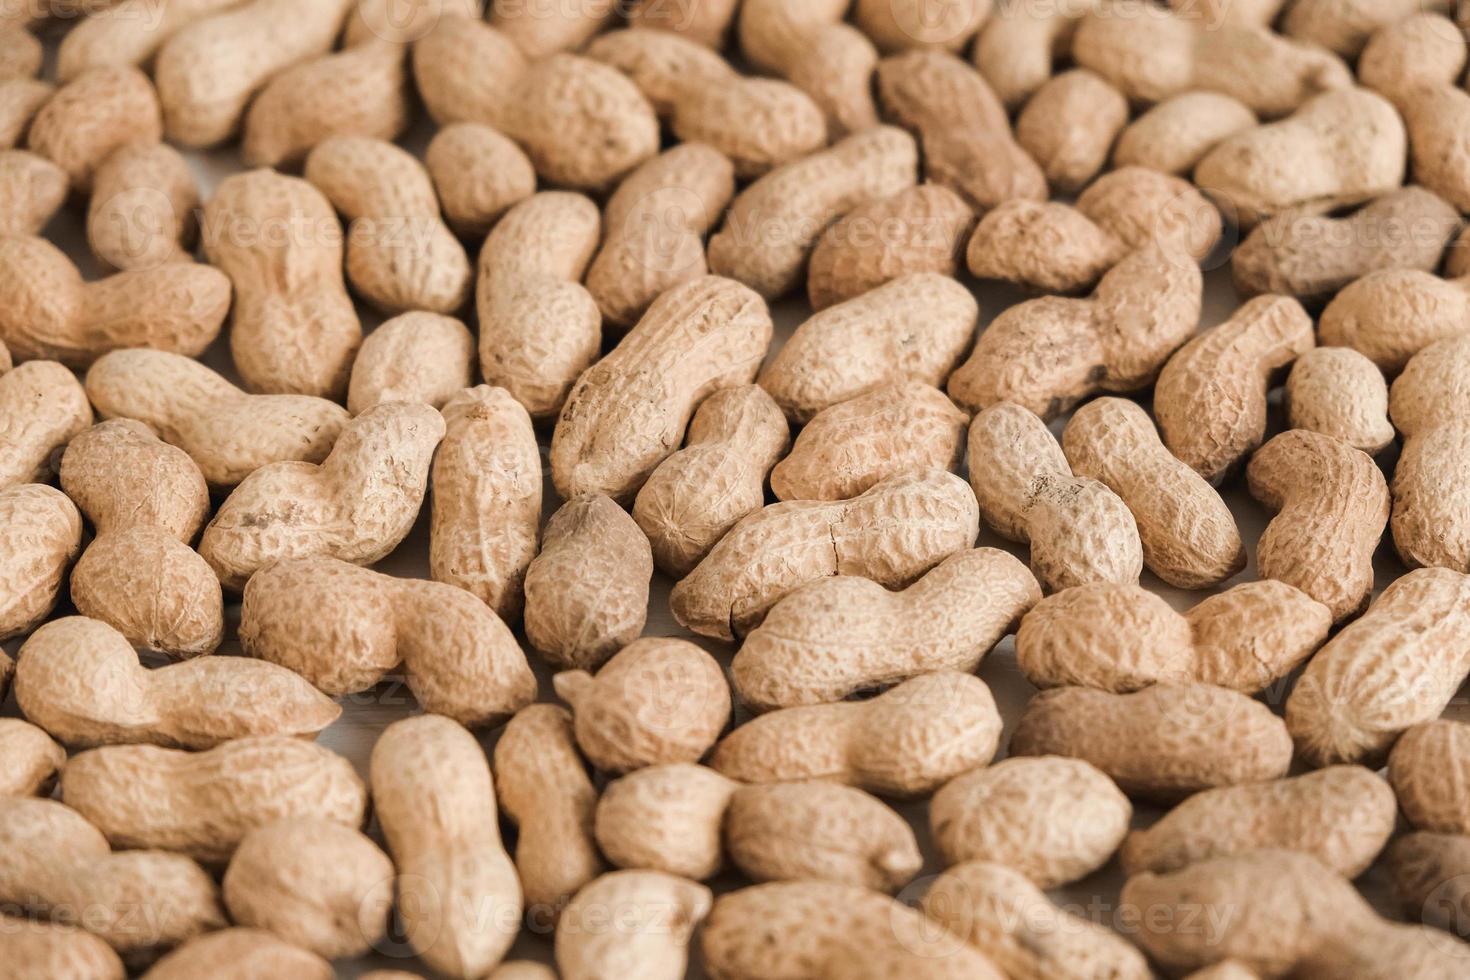 amendoins secos com casca como imagem de textura de fundo foto